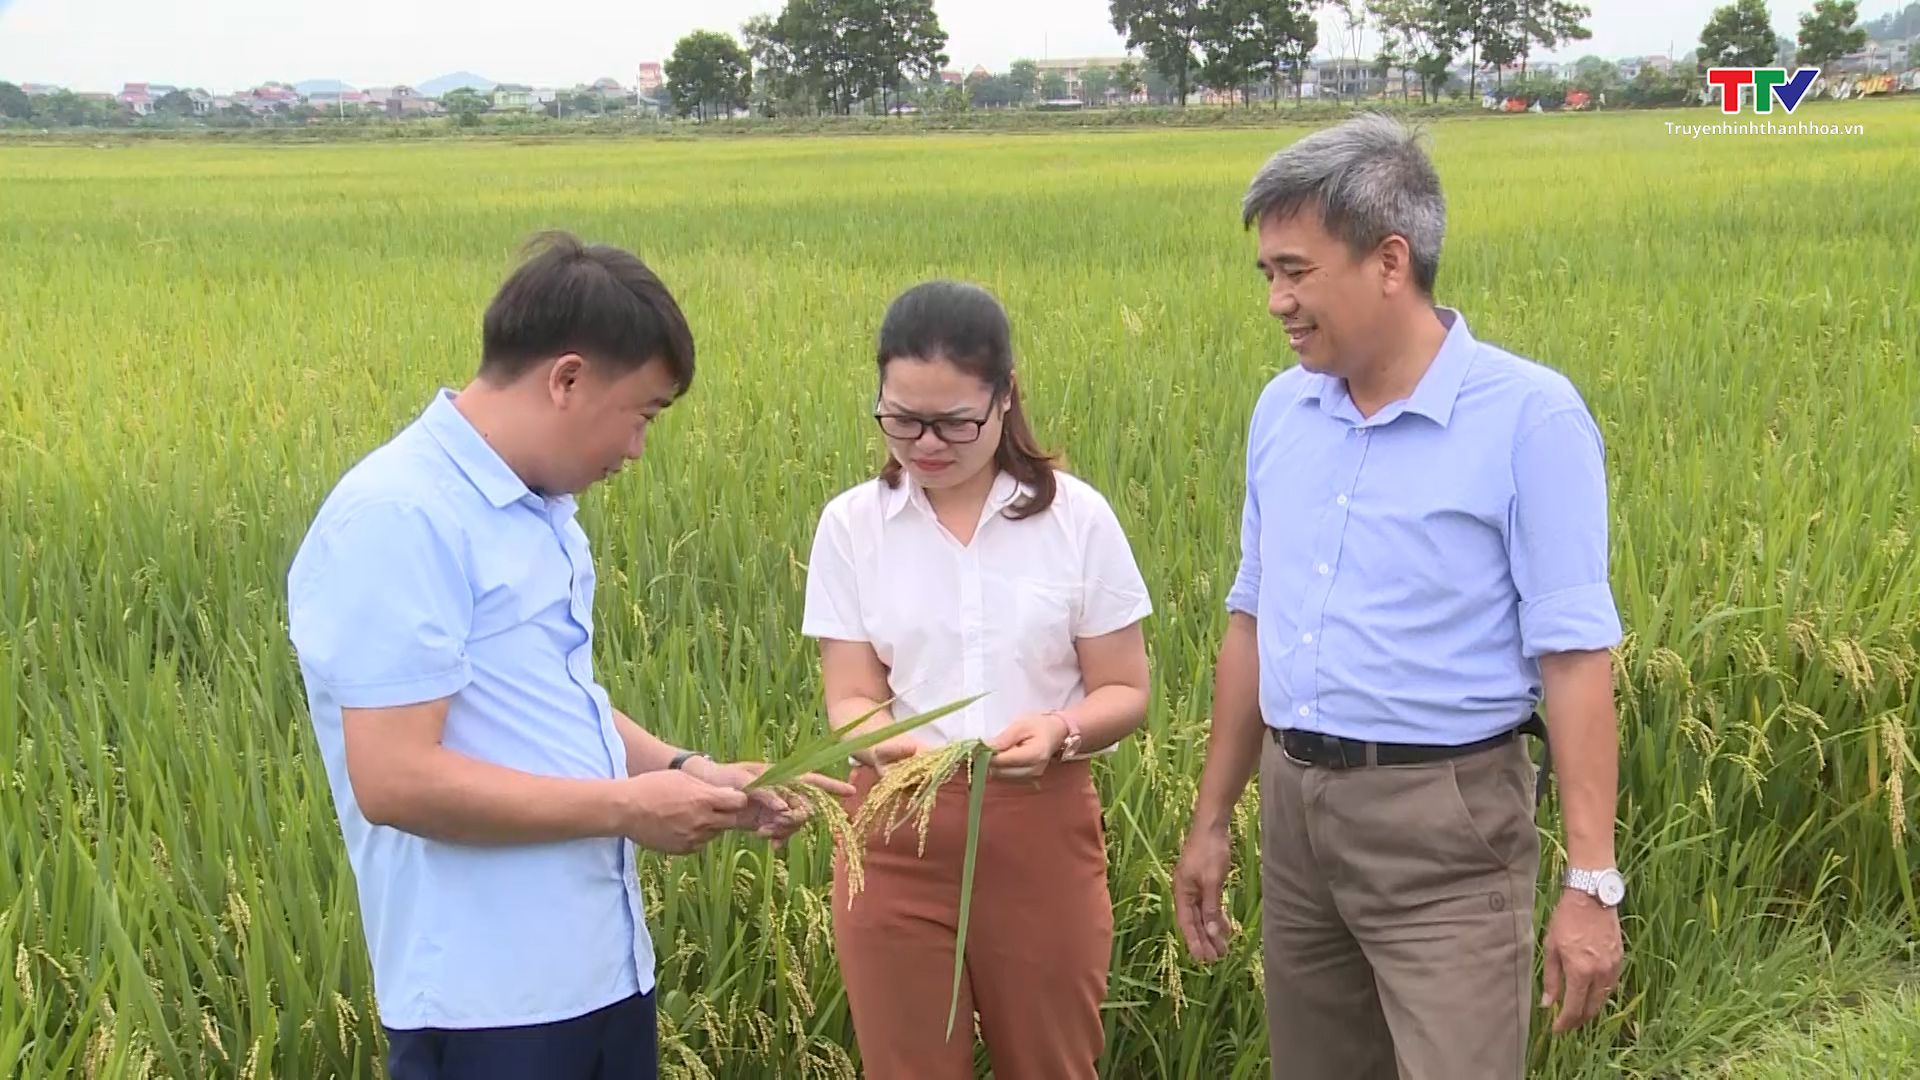 Hiệu quả liên kết sản xuất lúa nếp tại Thanh Hóa - Ảnh 4.